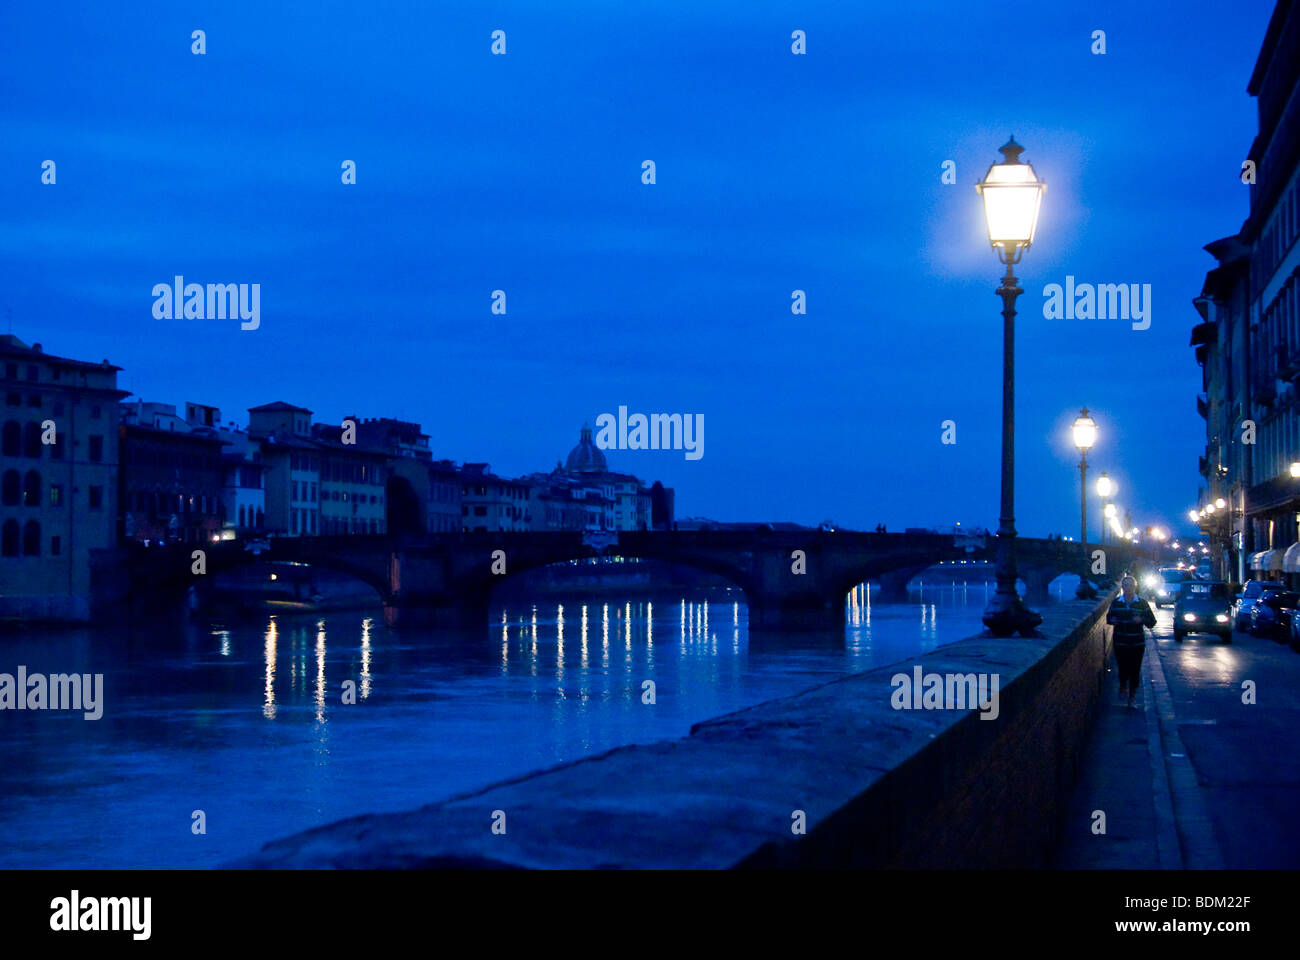 Des témoins de la rue contre un ciel de nuit à côté de la rivière Arno et le pont Santa Trinita, Florence, Italie Banque D'Images